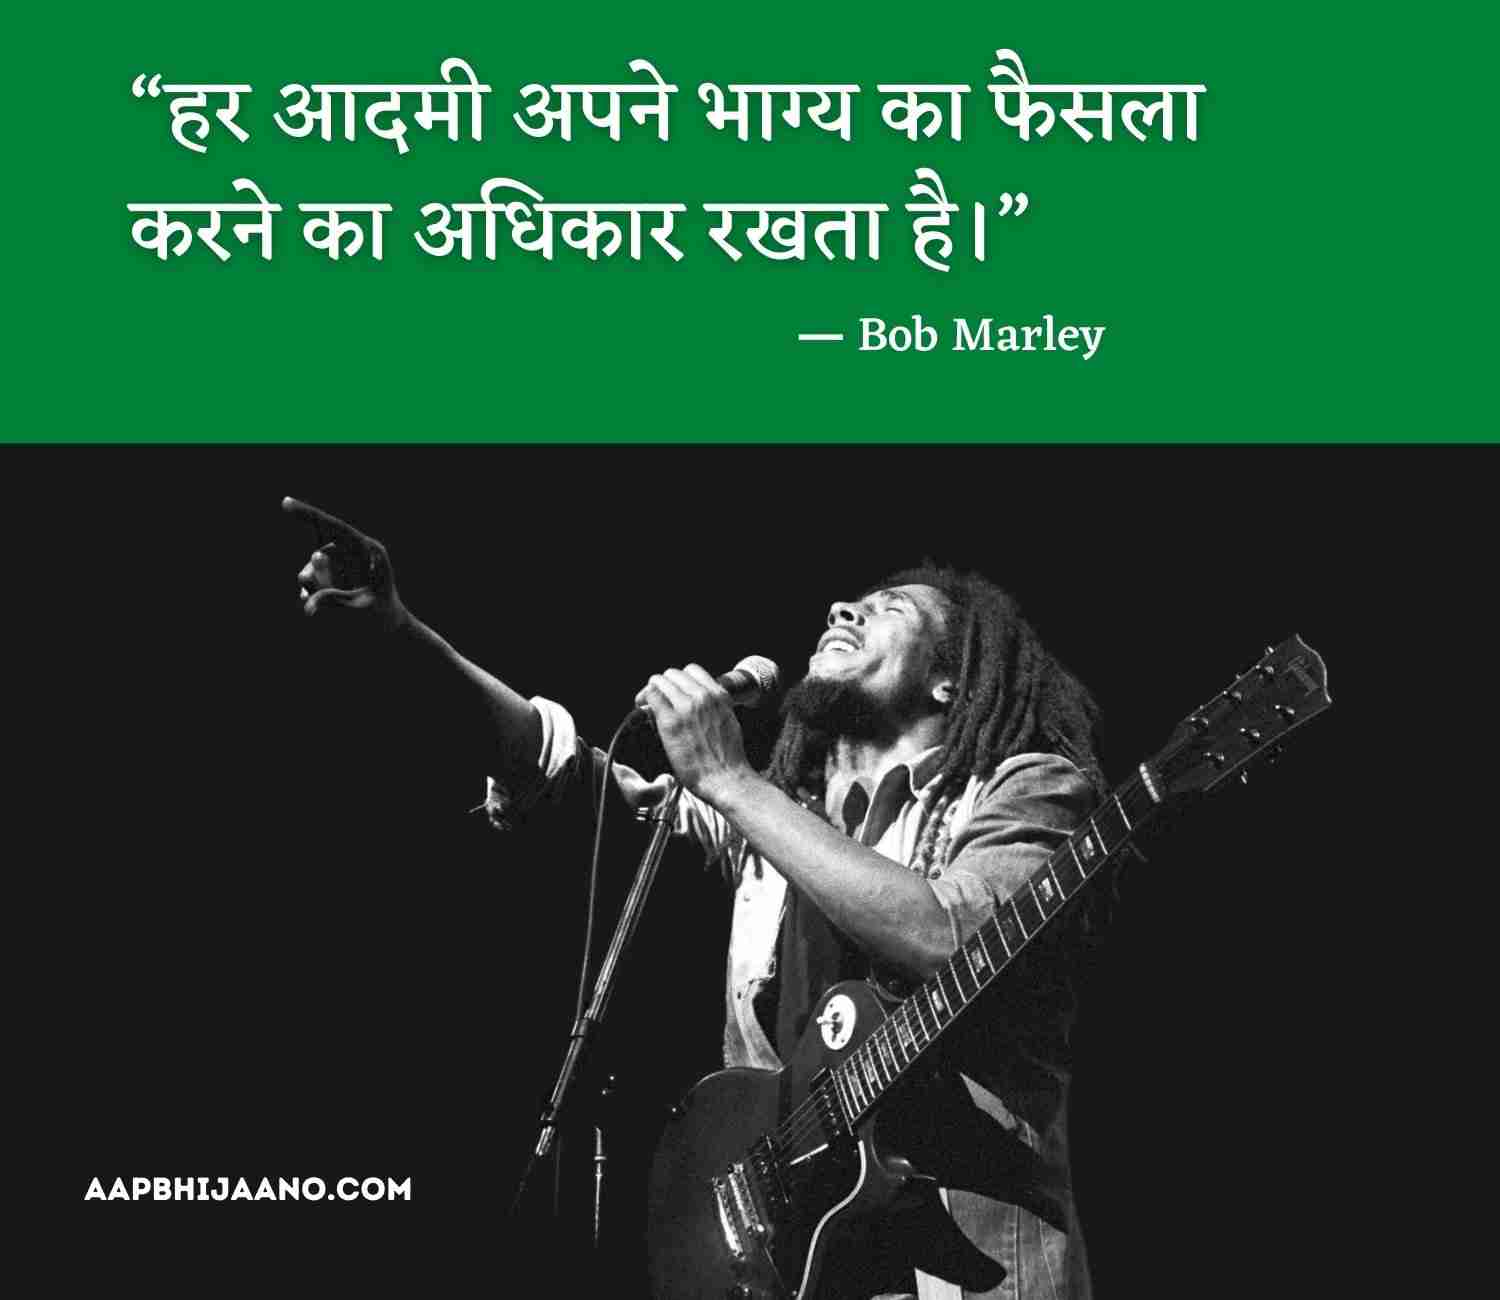 Bob Marley Quotes in Hindi